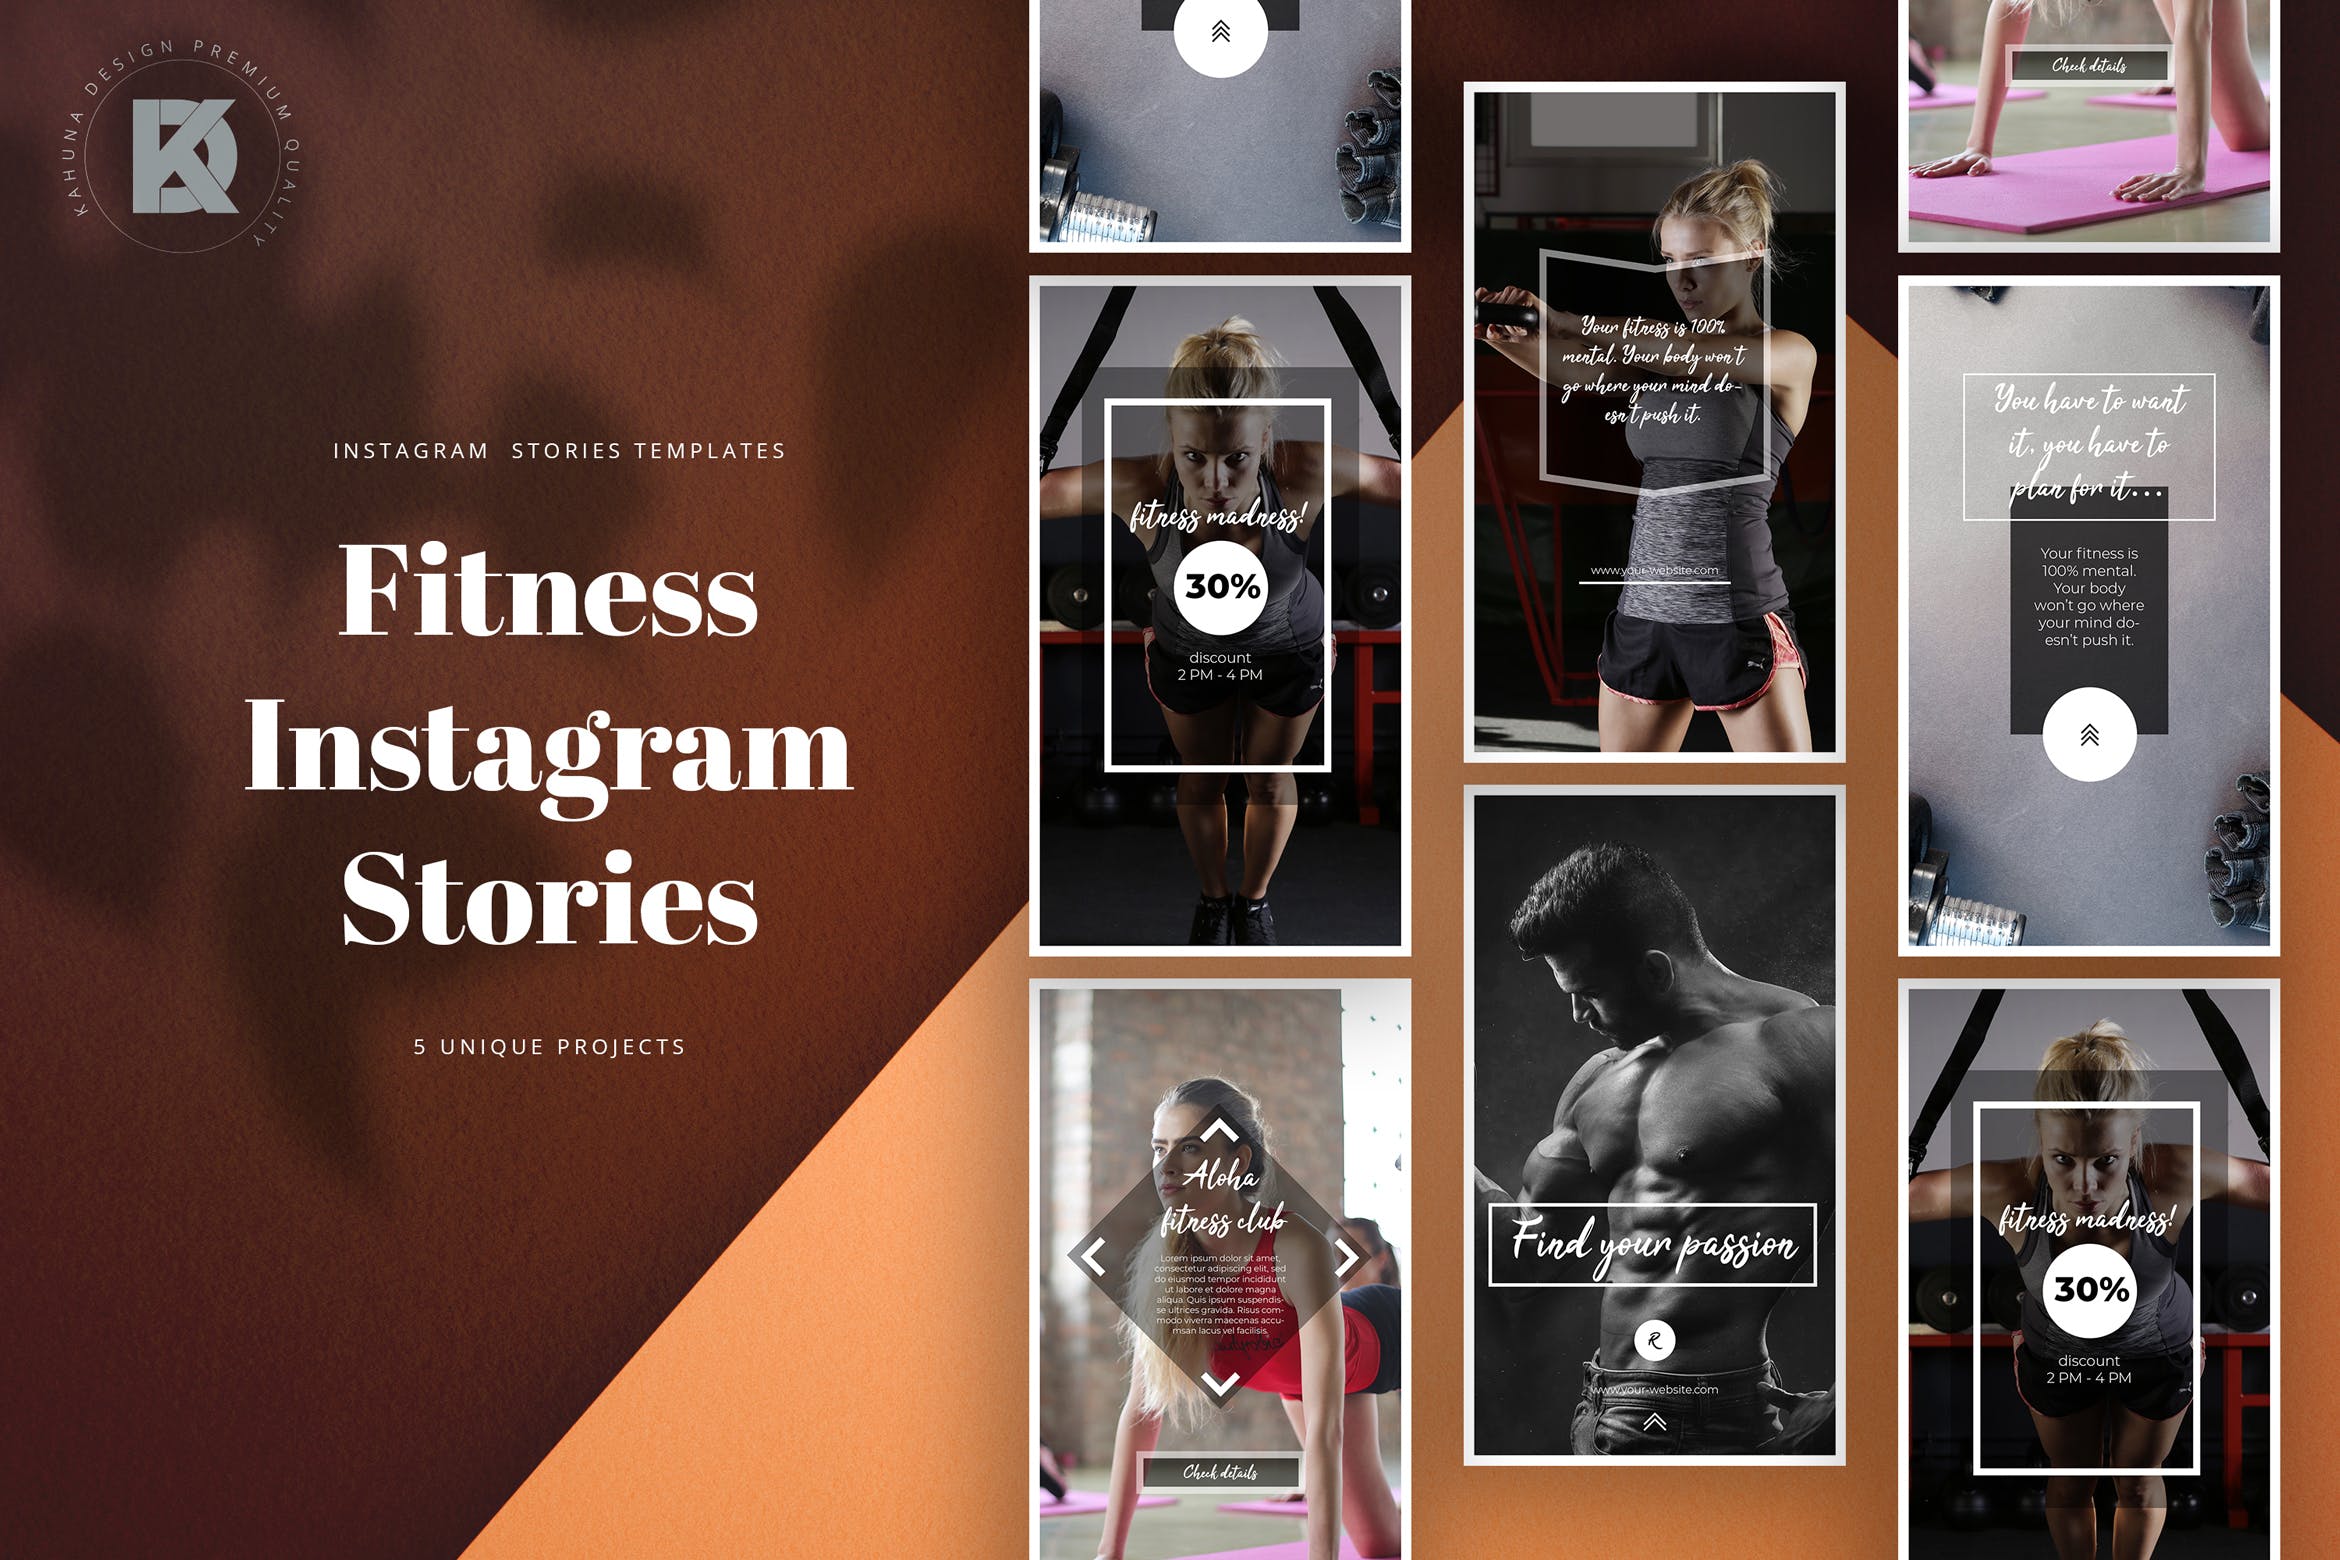 健身房俱乐部社交媒体推广Instagram帖子模板 Fitness Instagram Stories设计素材模板